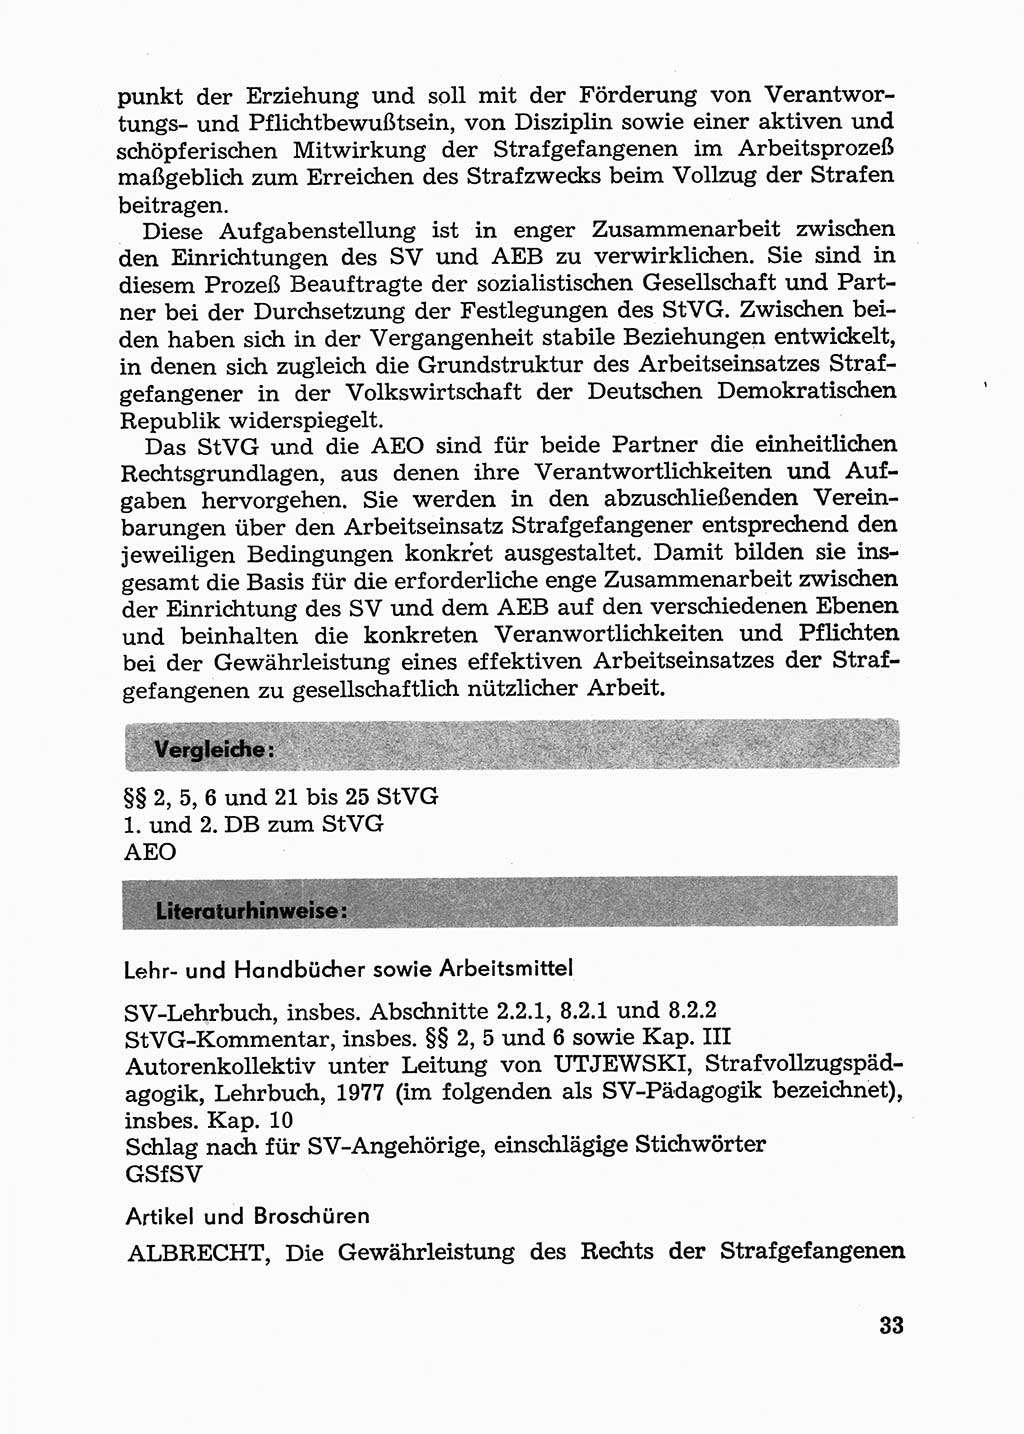 Handbuch für Betriebsangehörige, Abteilung Strafvollzug (SV) [Ministerium des Innern (MdI) Deutsche Demokratische Republik (DDR)] 1981, Seite 33 (Hb. BA Abt. SV MdI DDR 1981, S. 33)